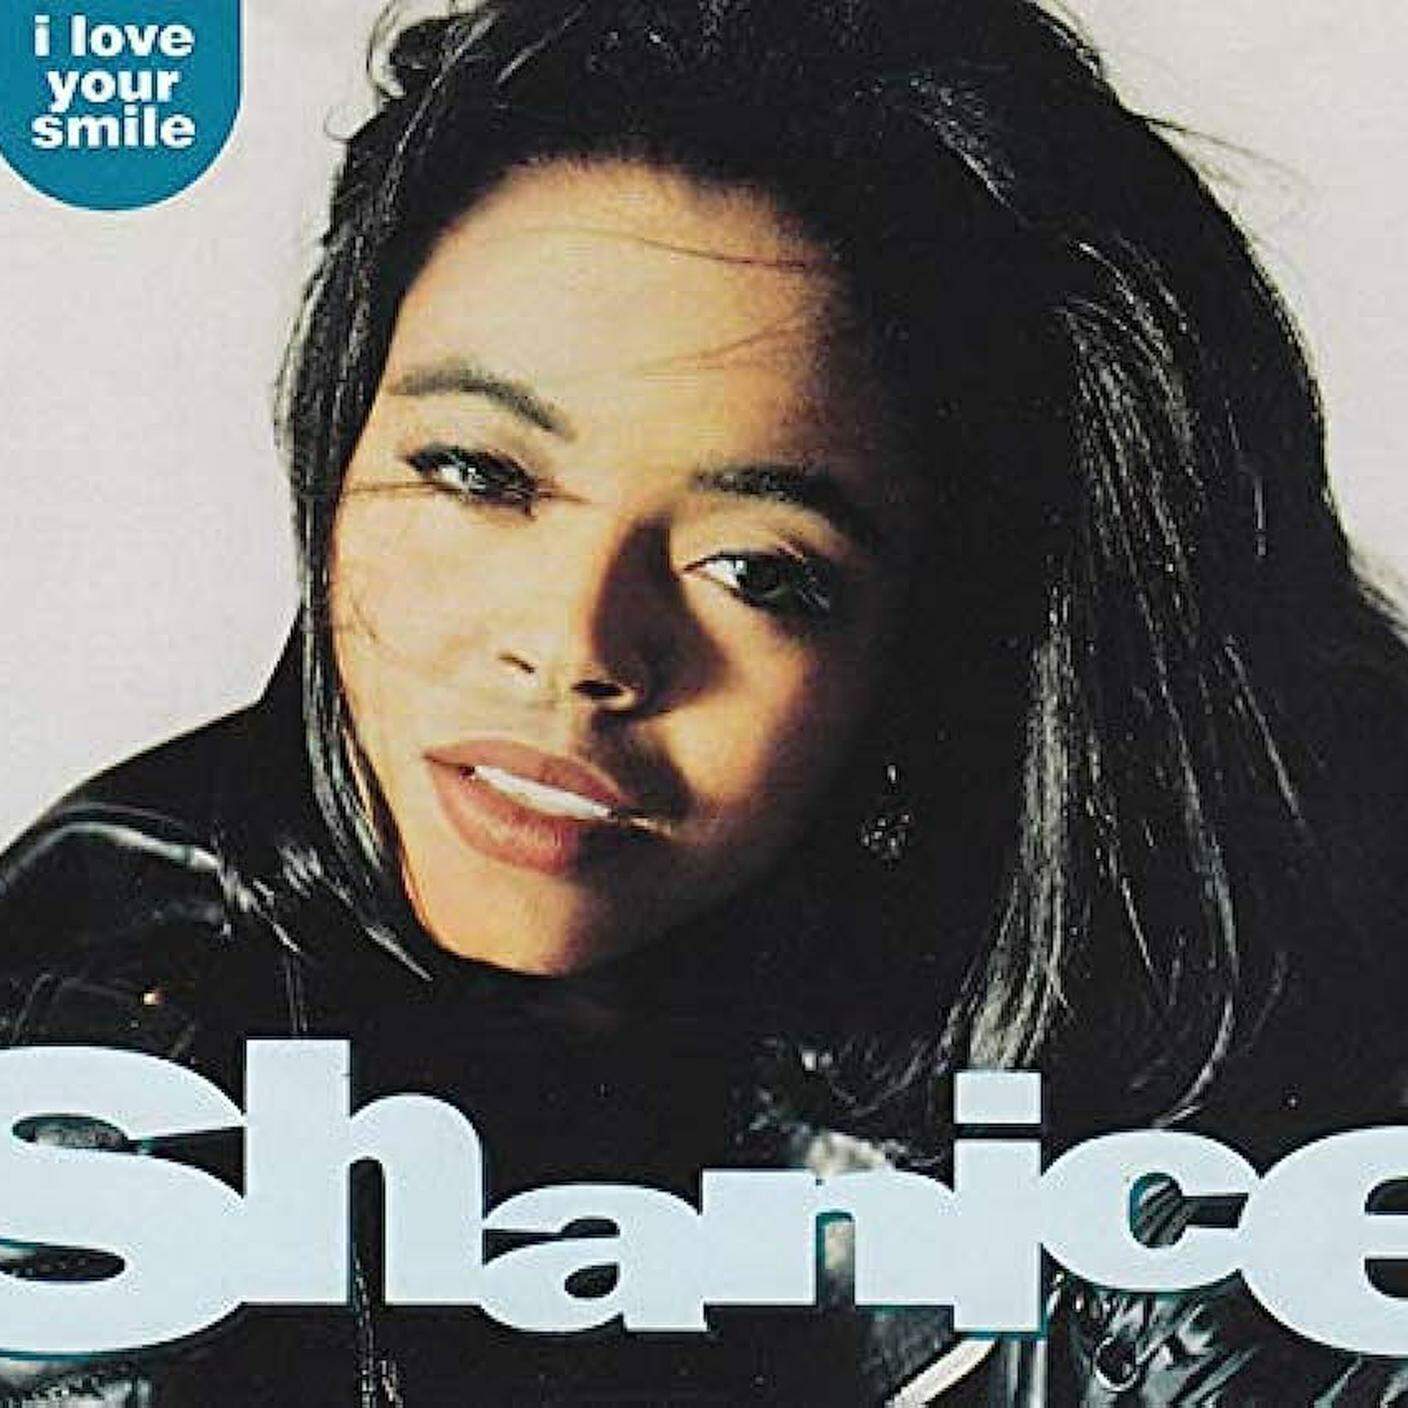 "I love your smile" di Shanice, Motown records (dettaglio di copertina)